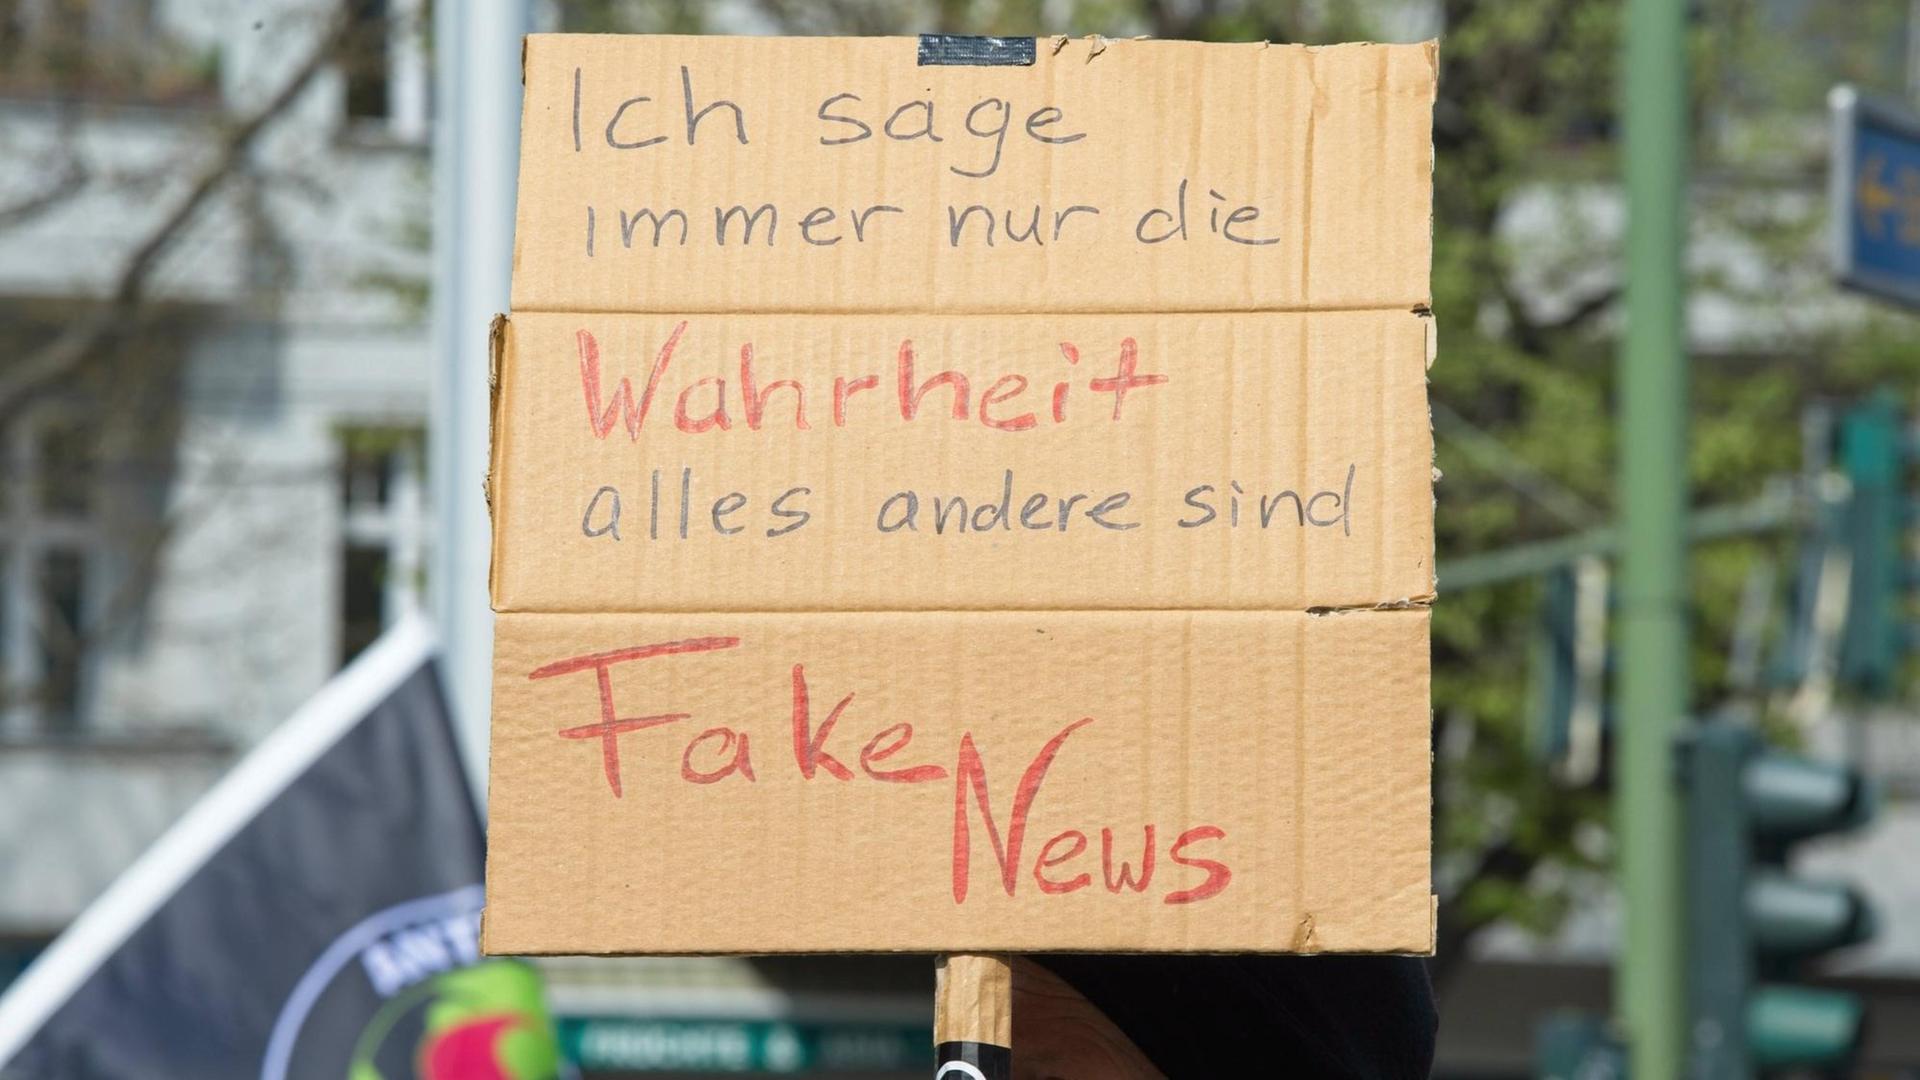 Zu sehen ist ein Plakat bei einer Demo mit dem Text "Ich sage immer nur die Wahrheit - alles Andere sind Fake News"